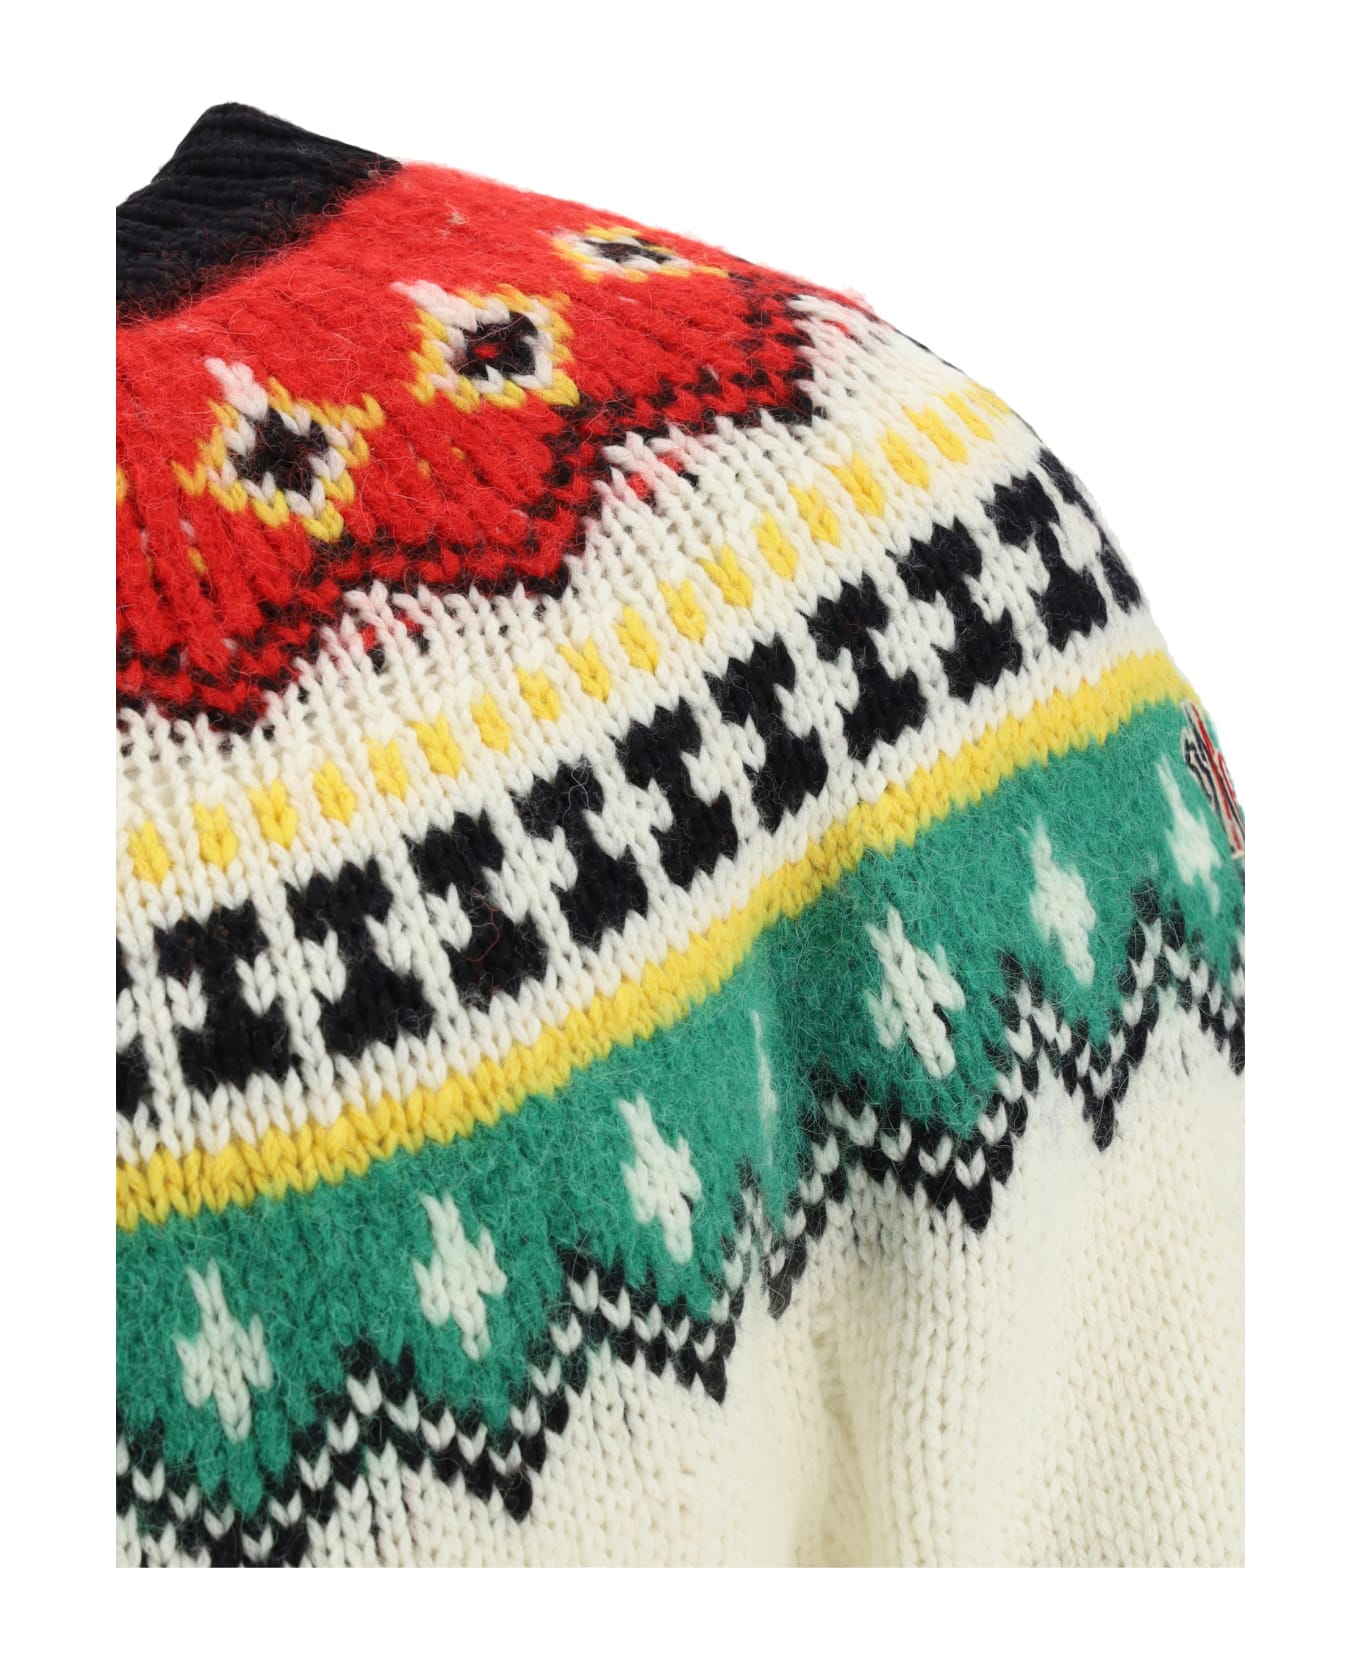 Moncler Grenoble Grenoble Tricot Sweater - White ニットウェア